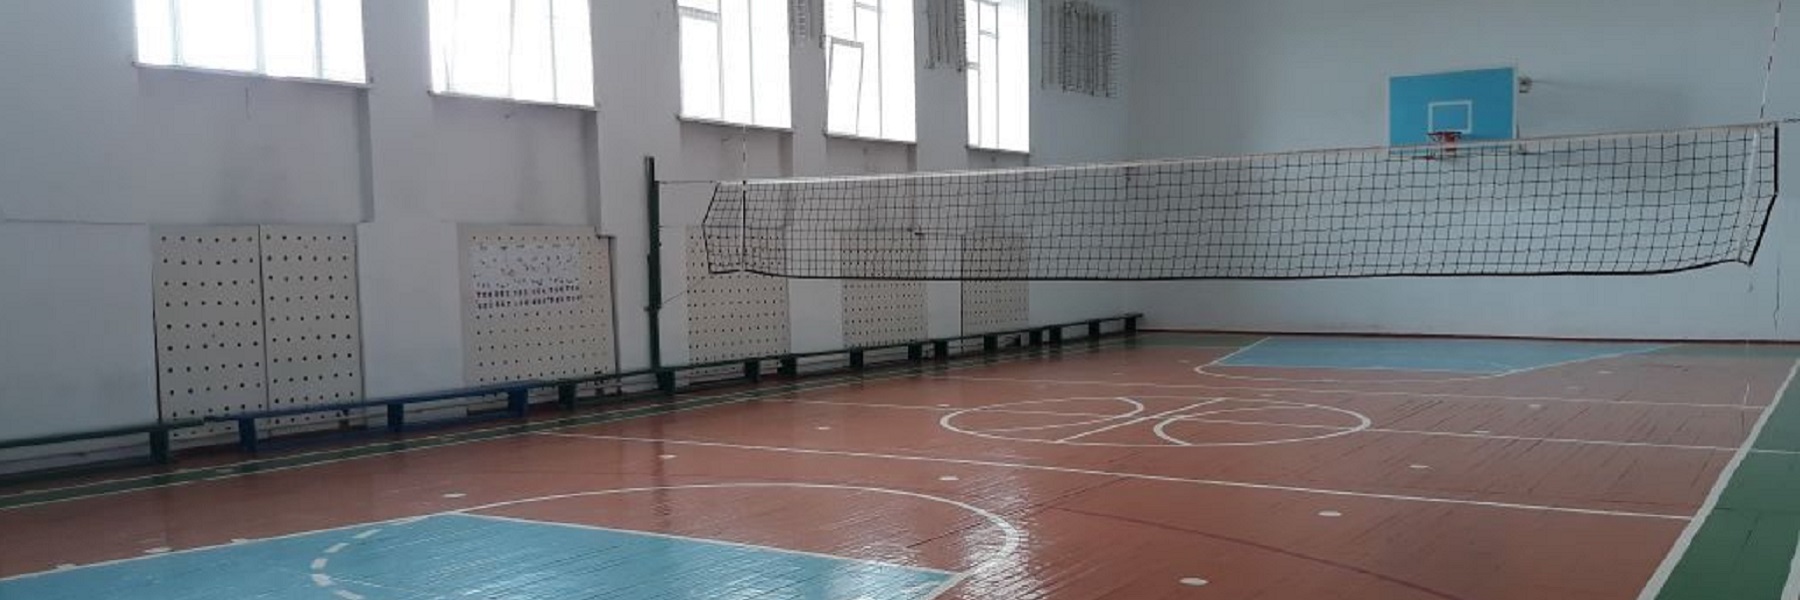 Спортивный зал (главный корпус)